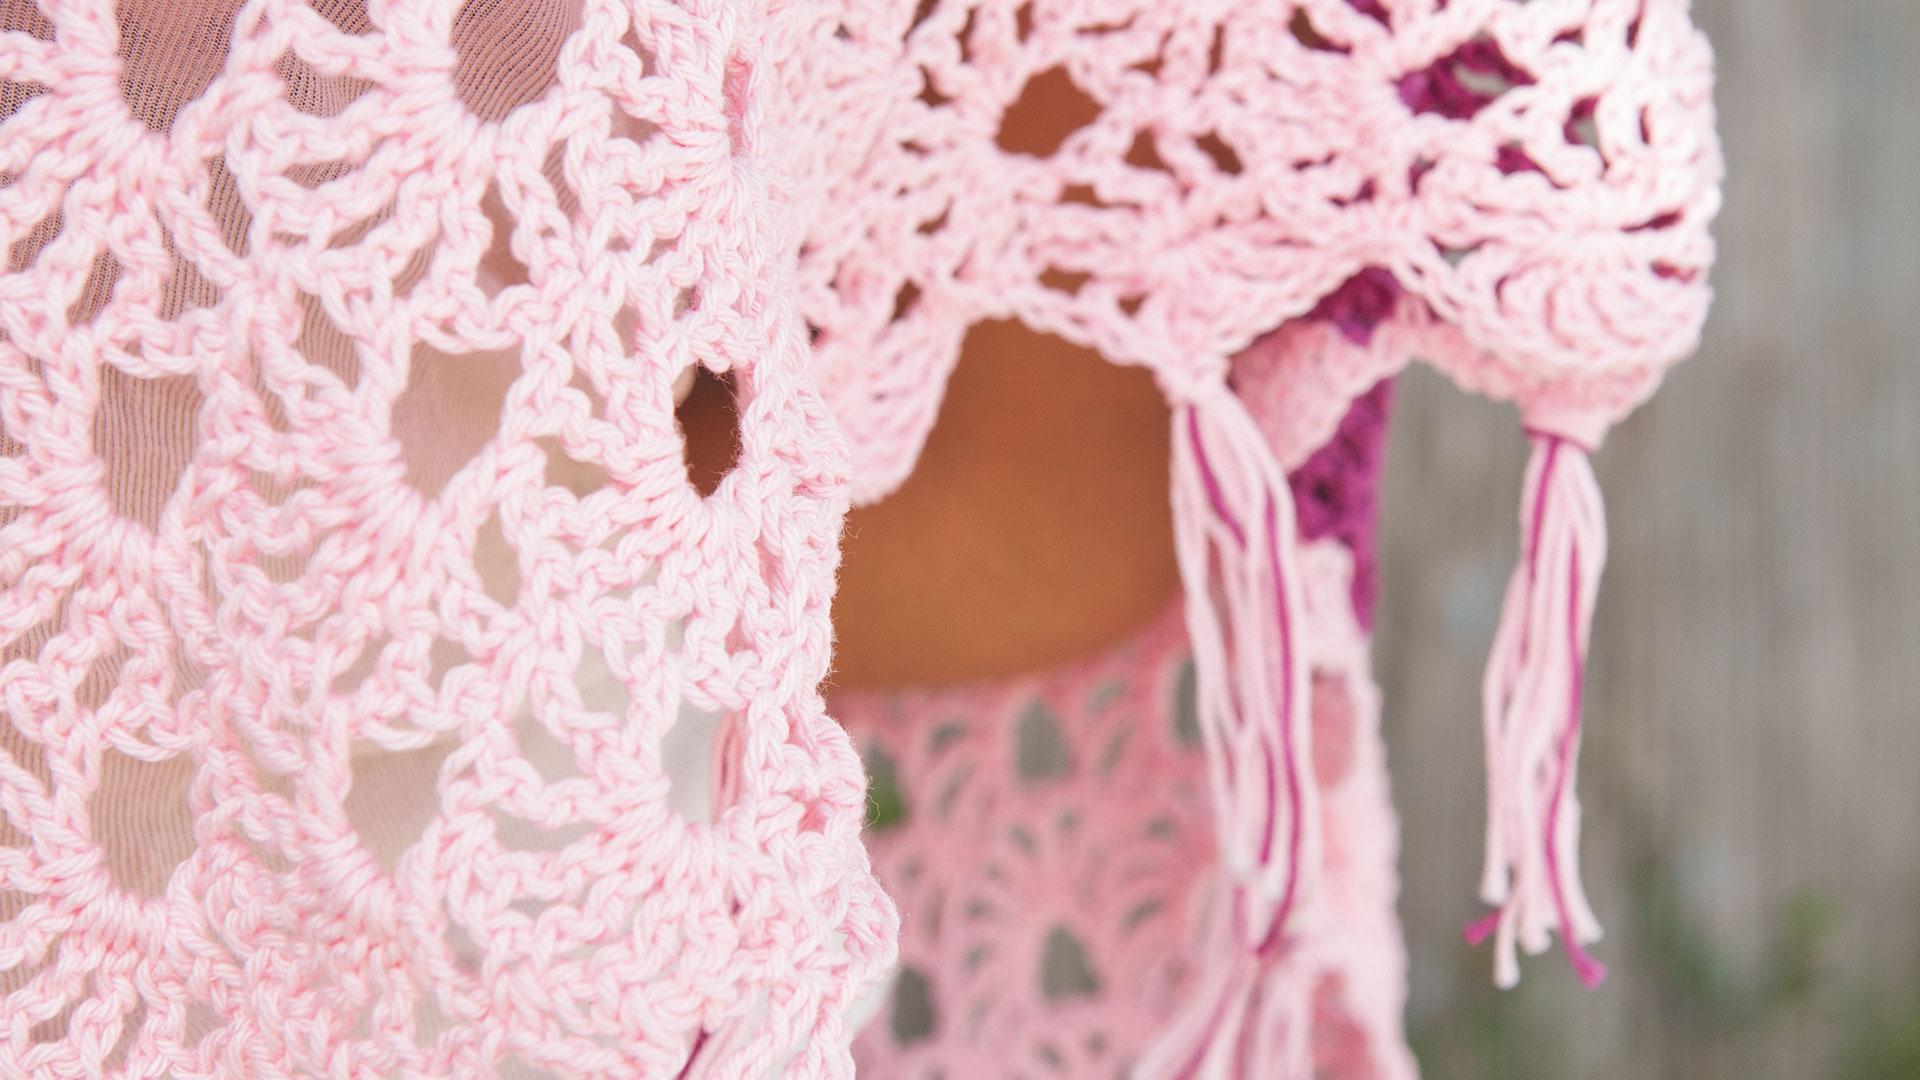 Detailaufnahme rosaner Häkelponcho